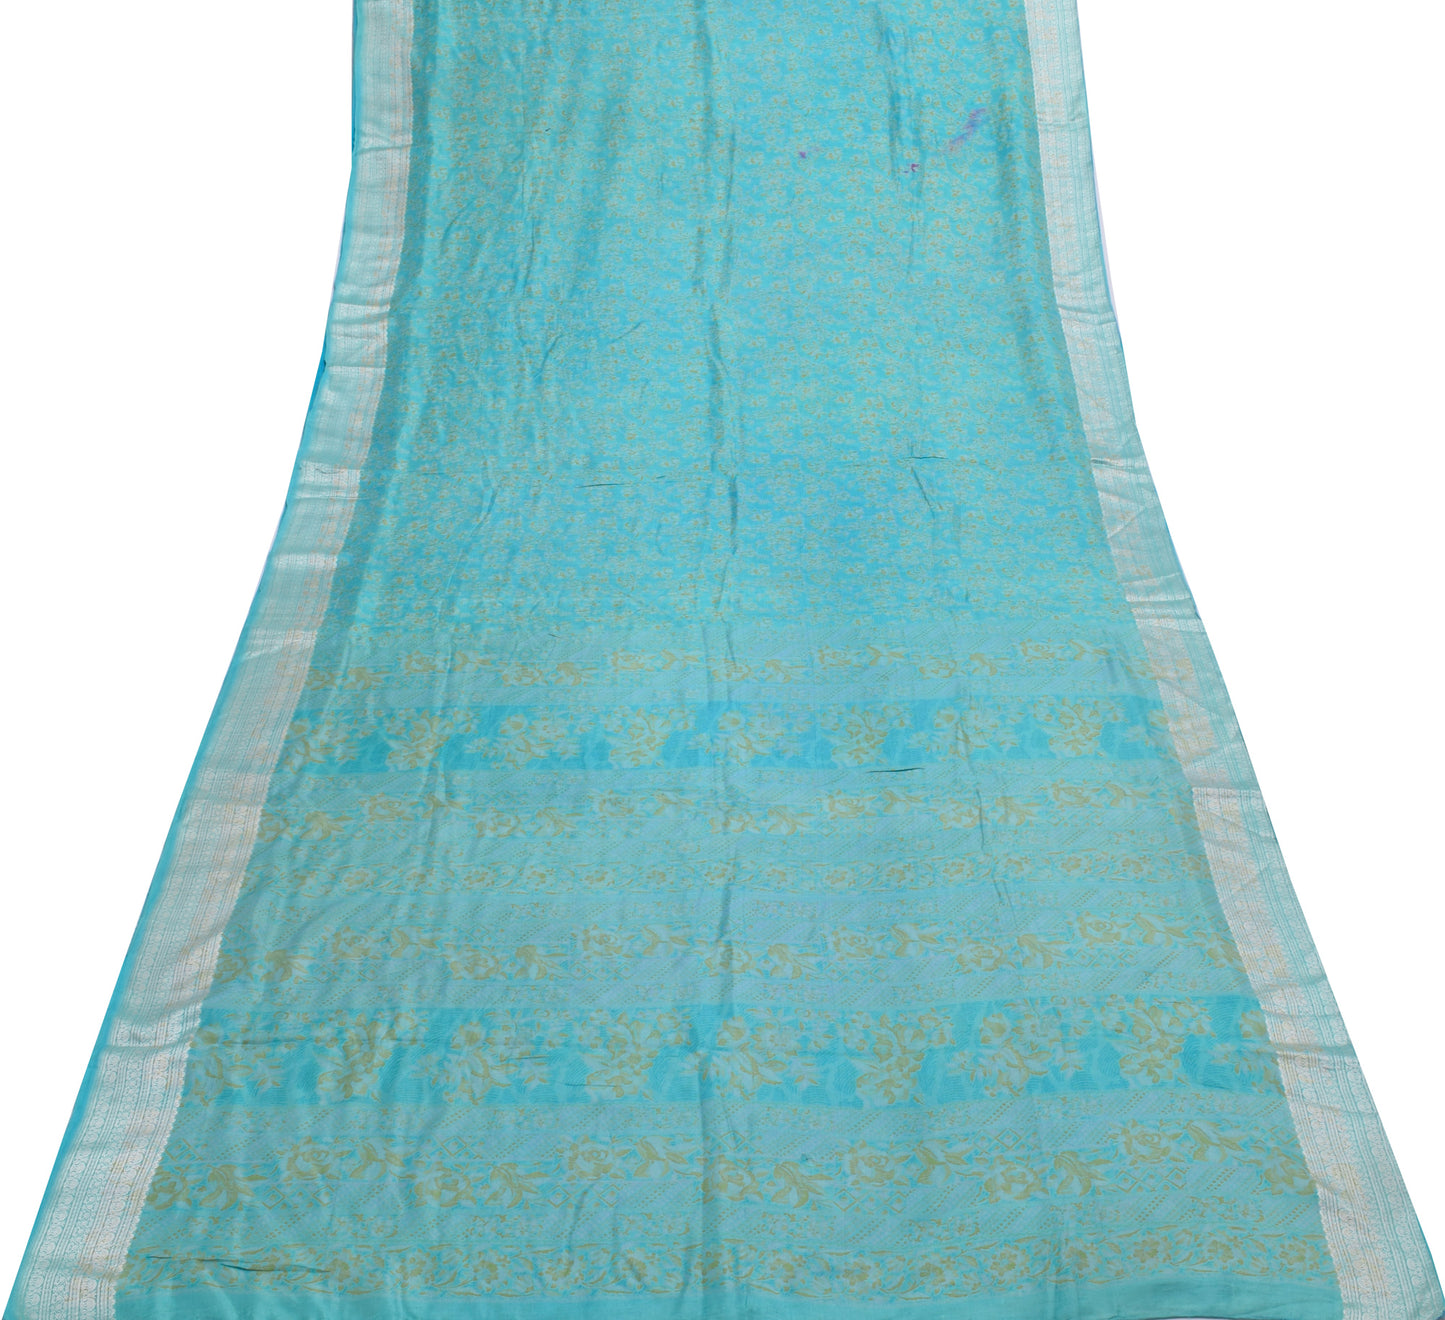 Sushila Vintage Turquoise Blue Scrap Sari Pure Silk Printed Floral Sari Fabric